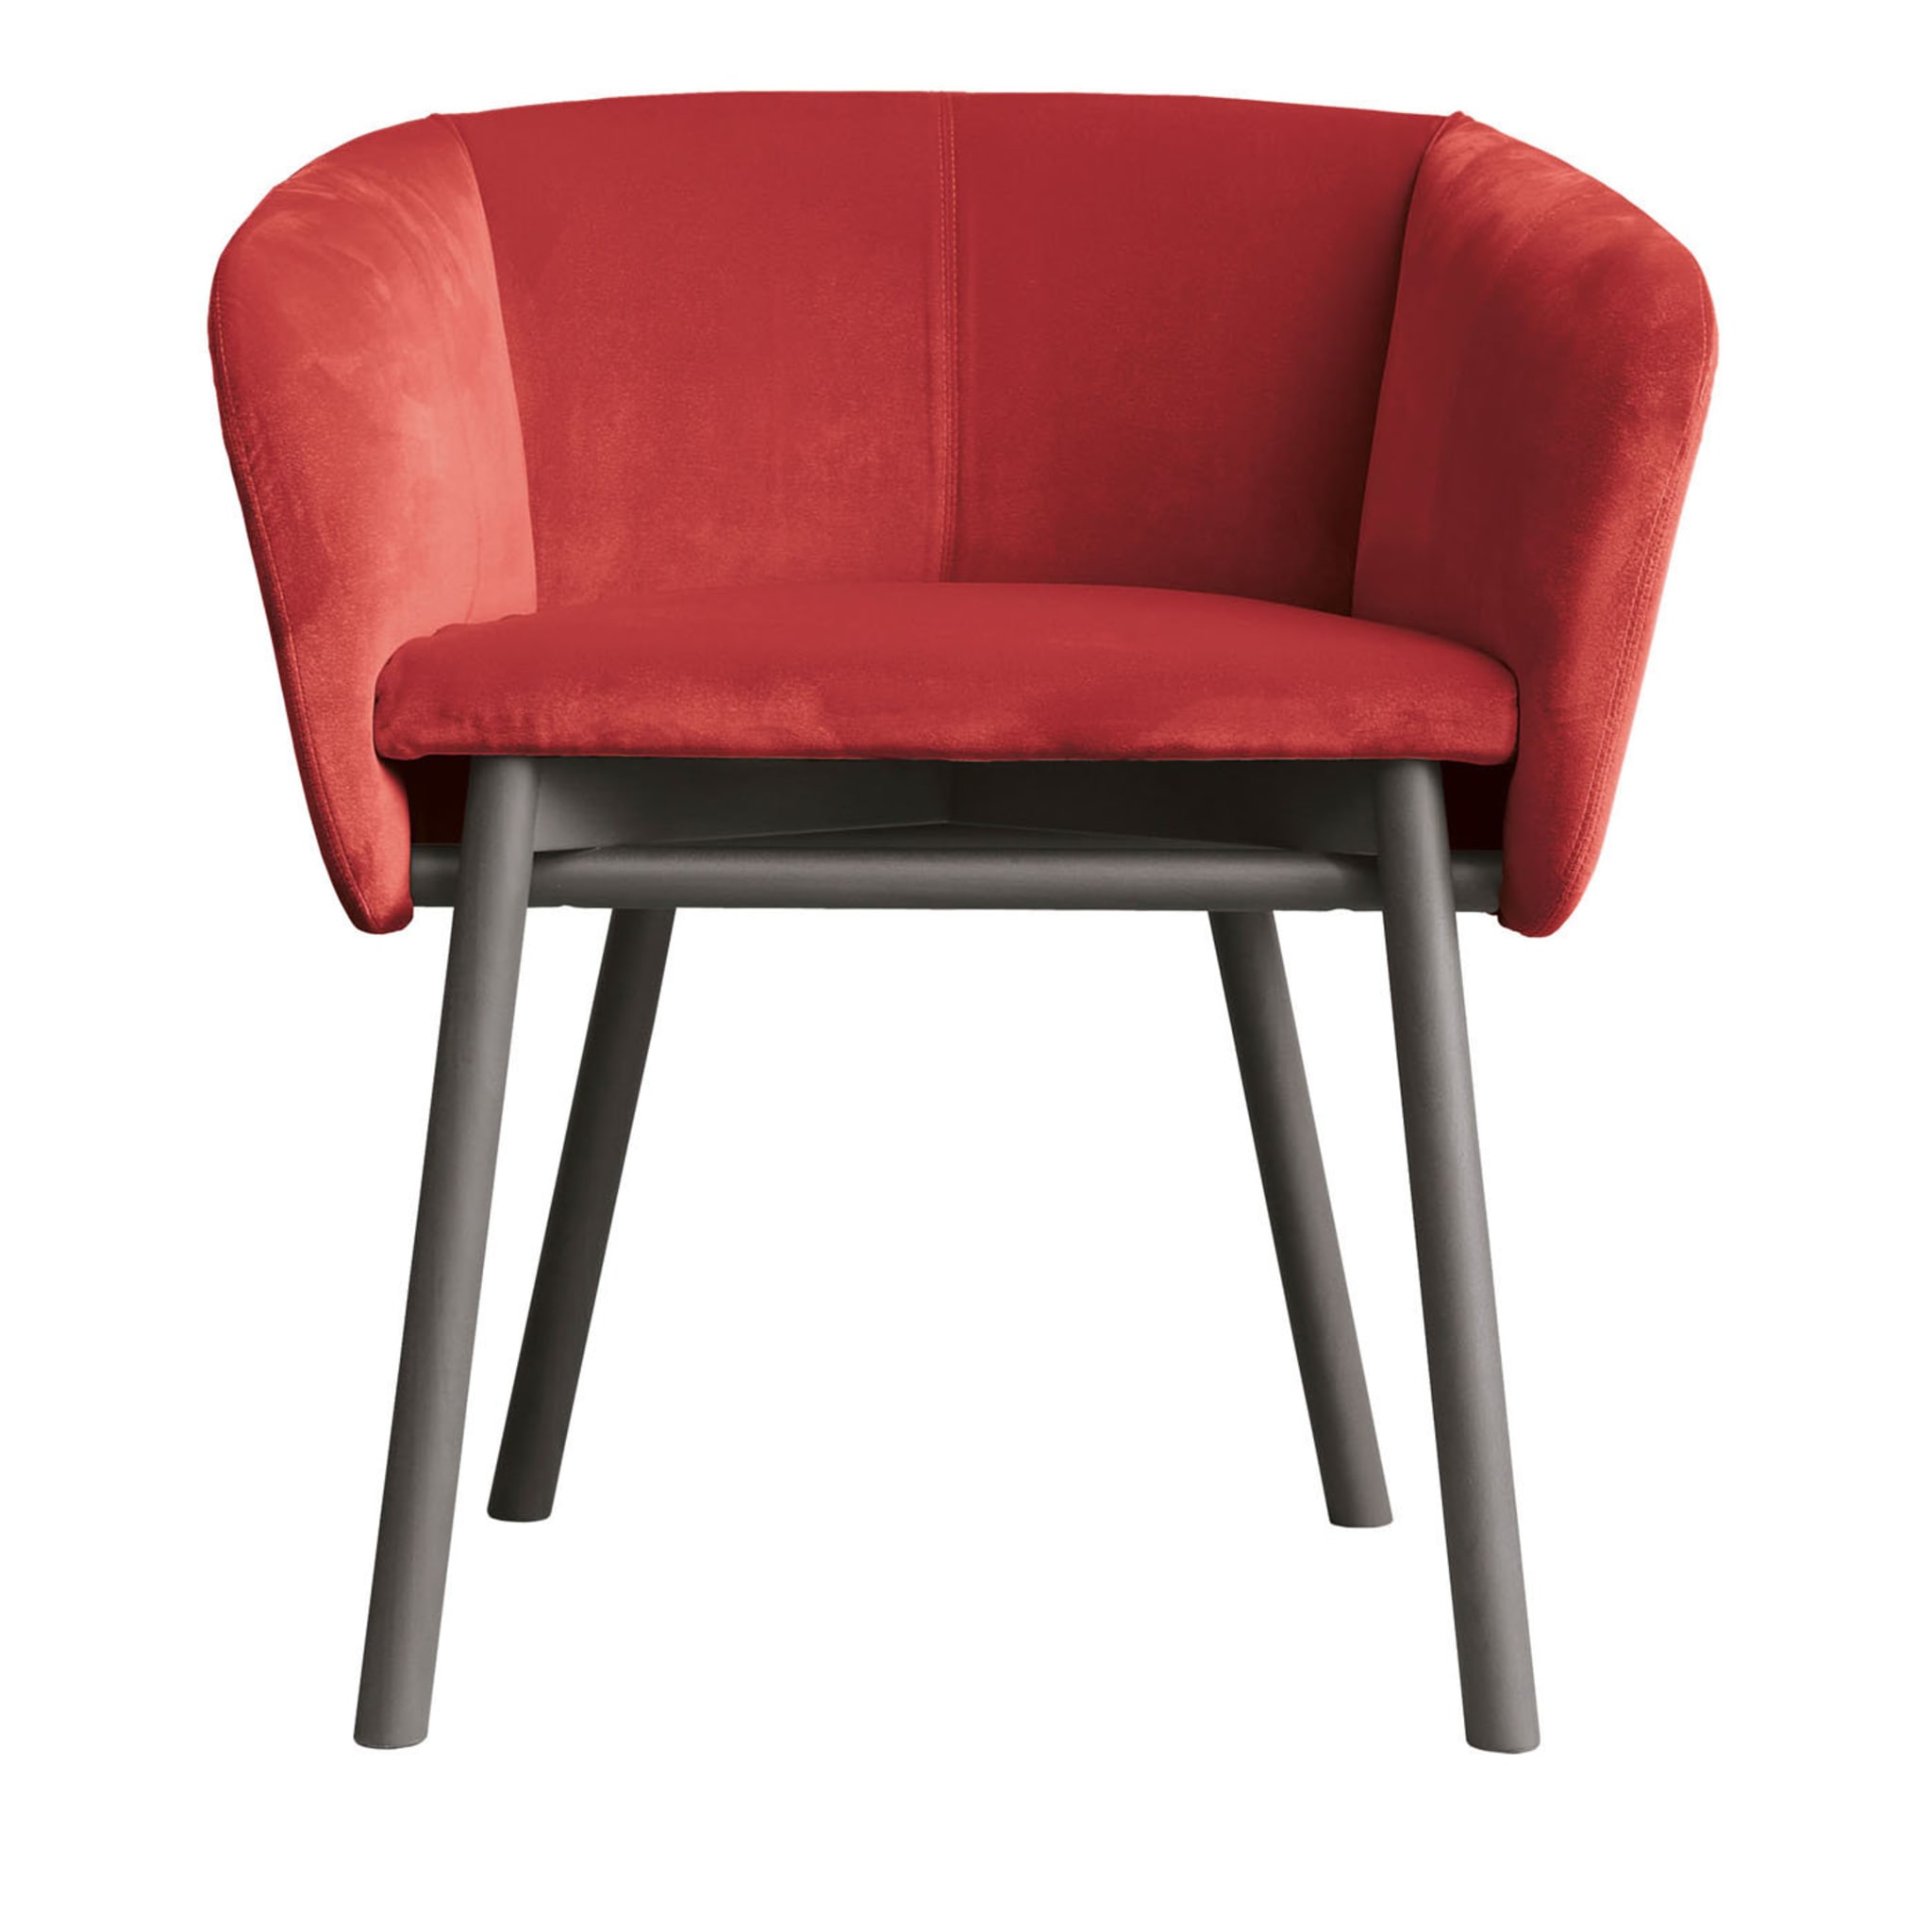 Balù Red Chair By Emilio Nanni - Main view